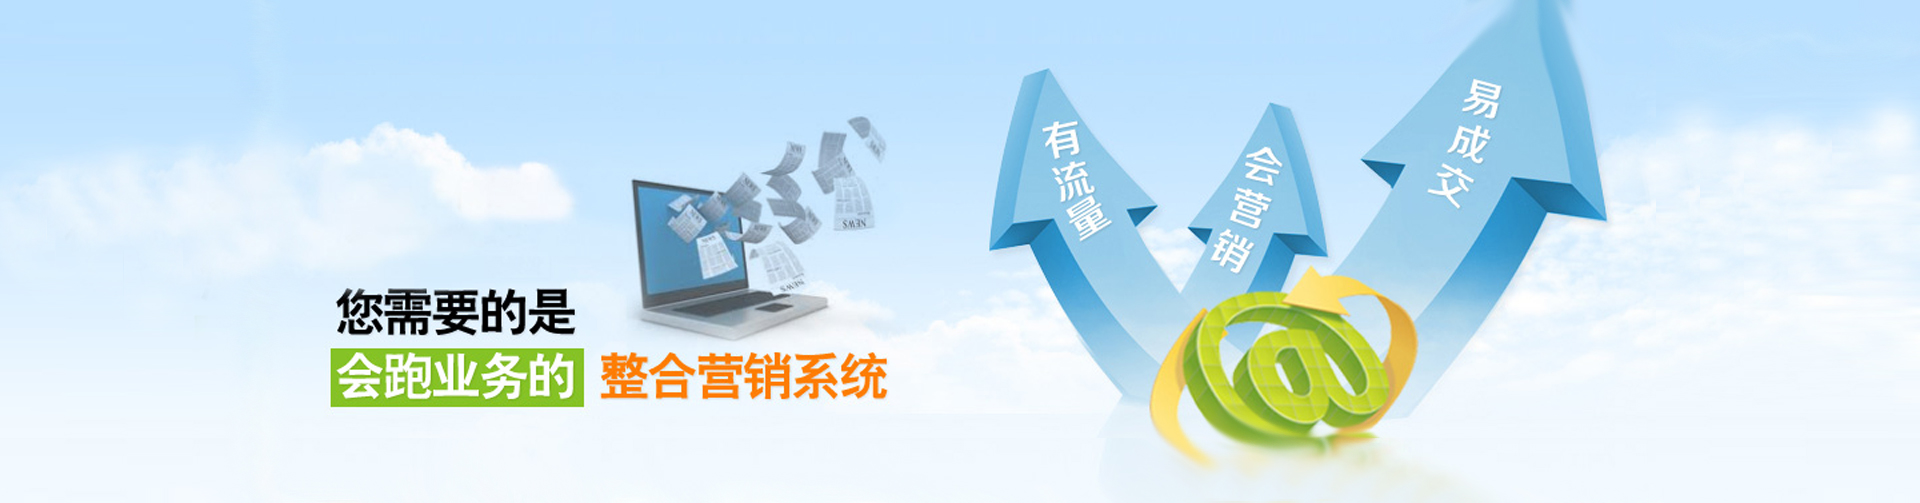 软文营销,软文推广,上海软文营销推广公司